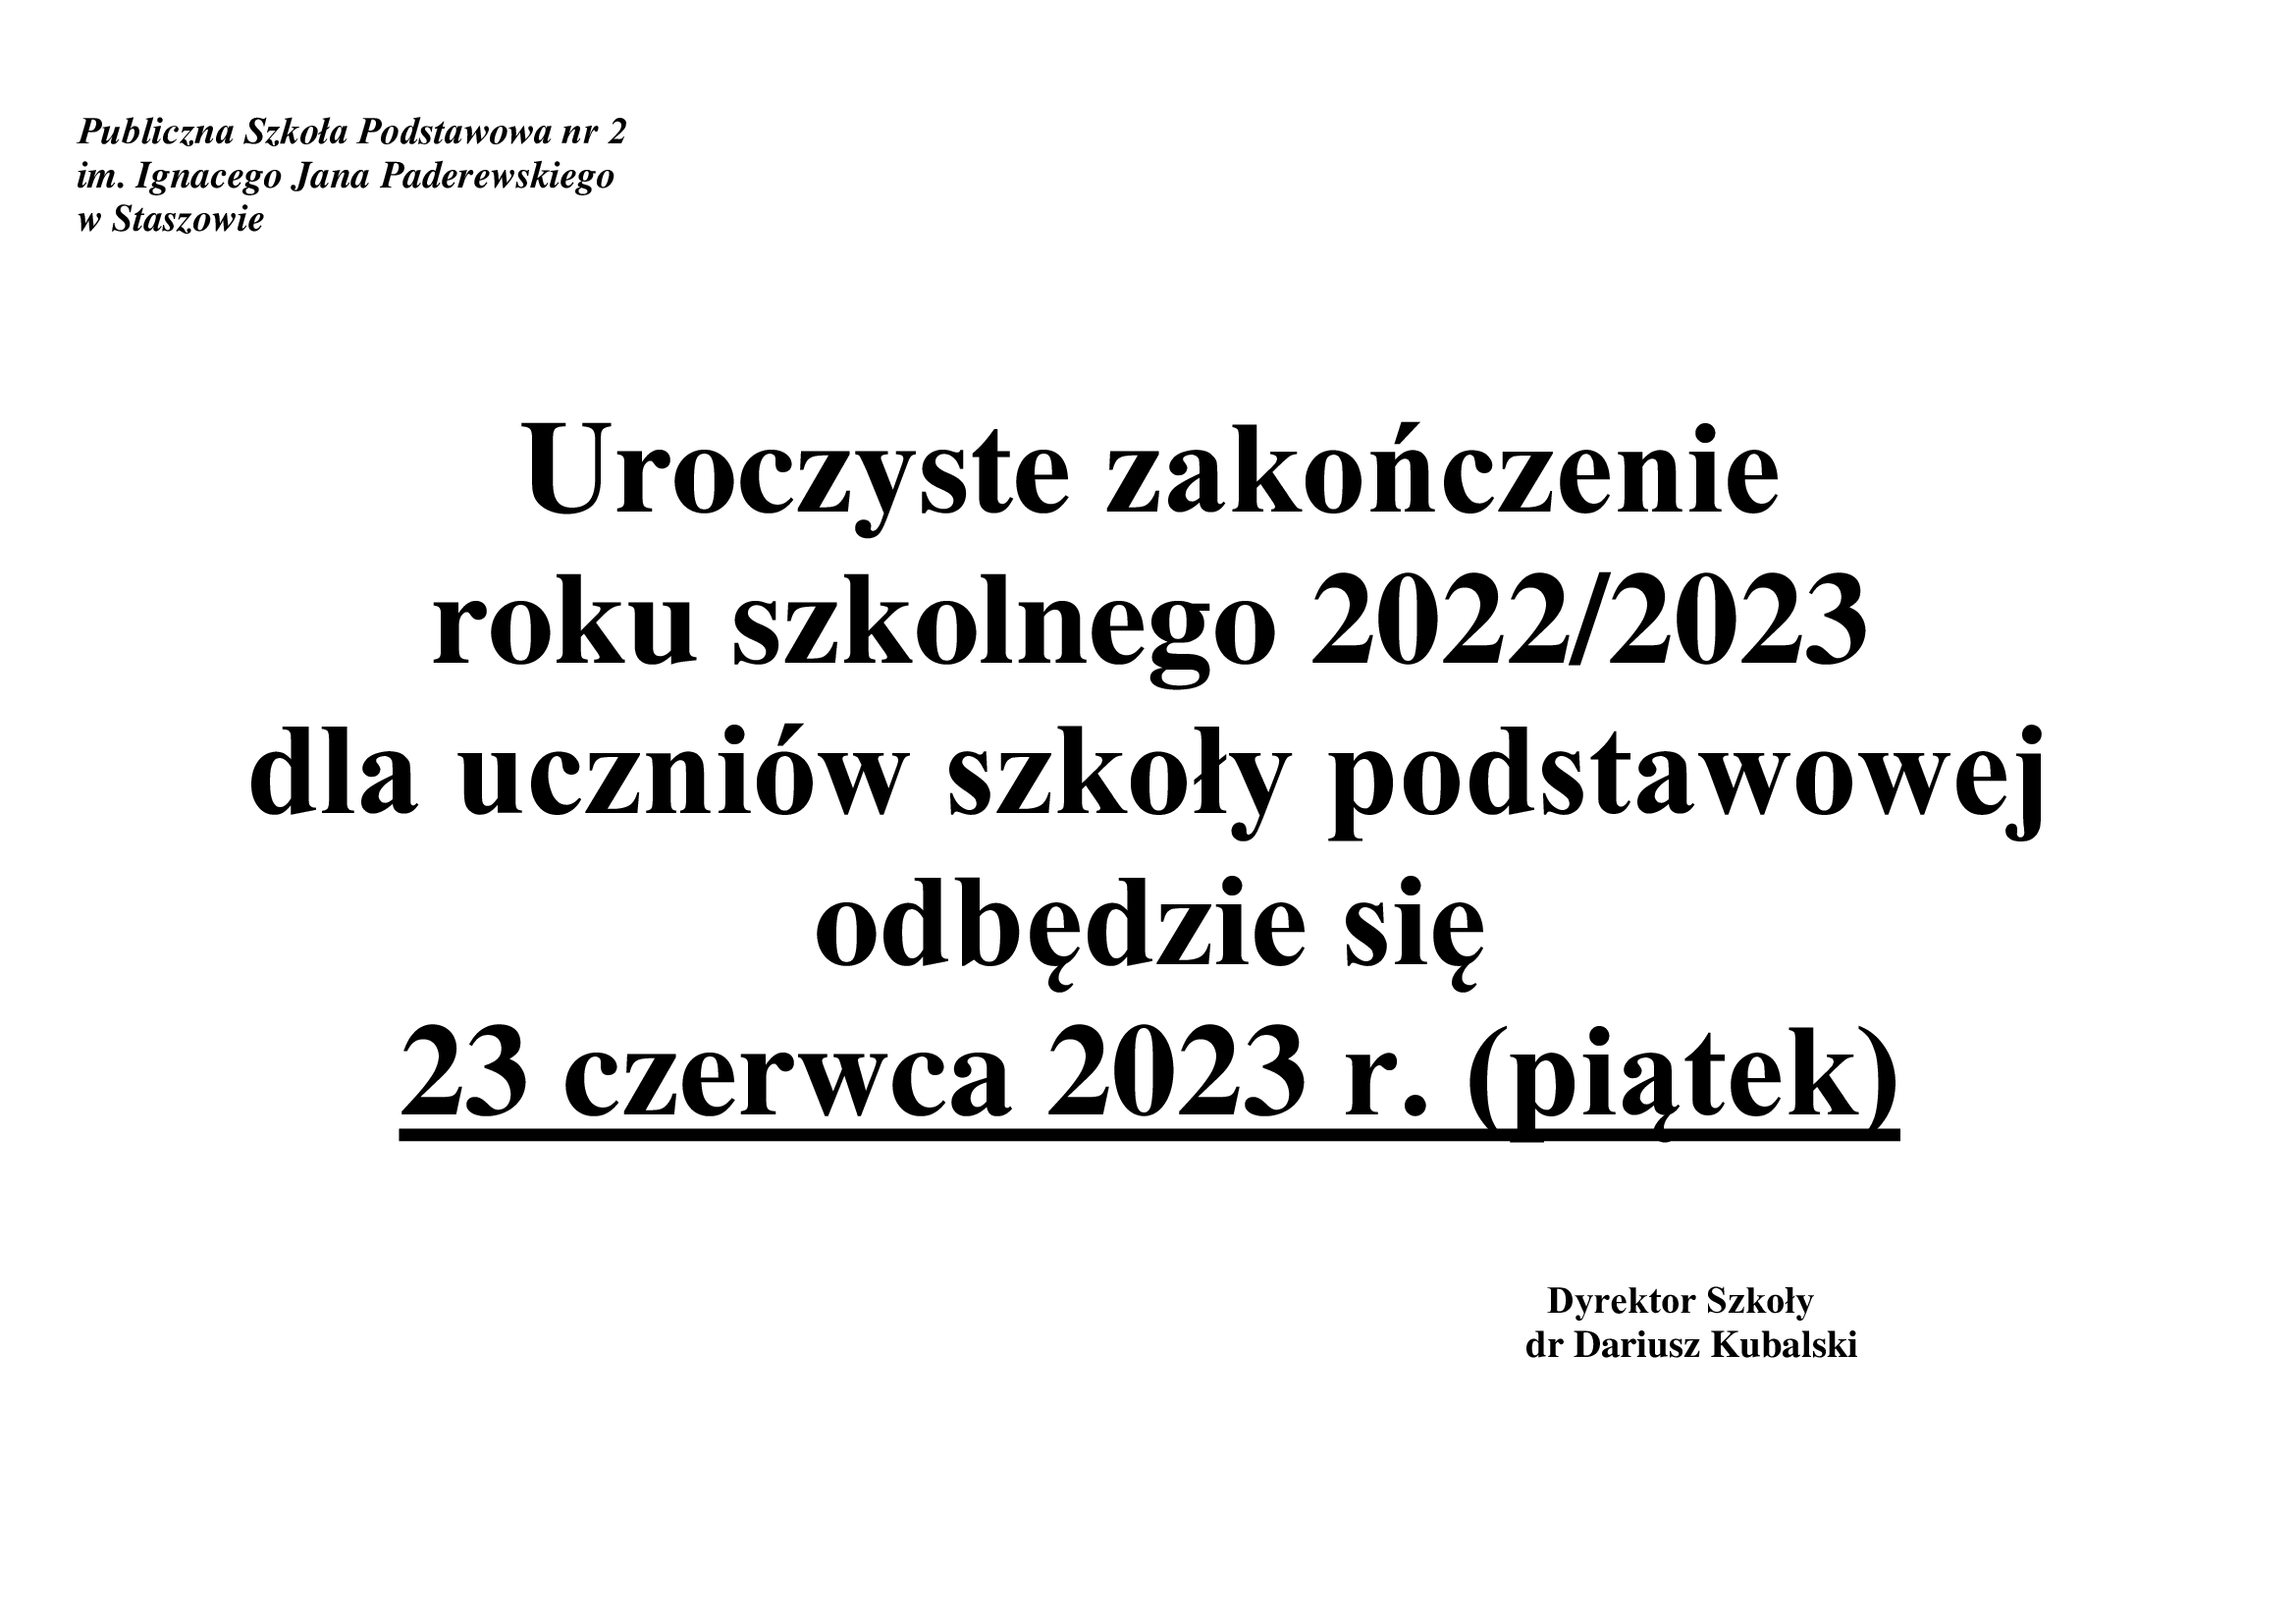 Informacja o uroczystym zakończeniu roku szkolnego 2022/2023 dla uczniów szkoły podstawowej 